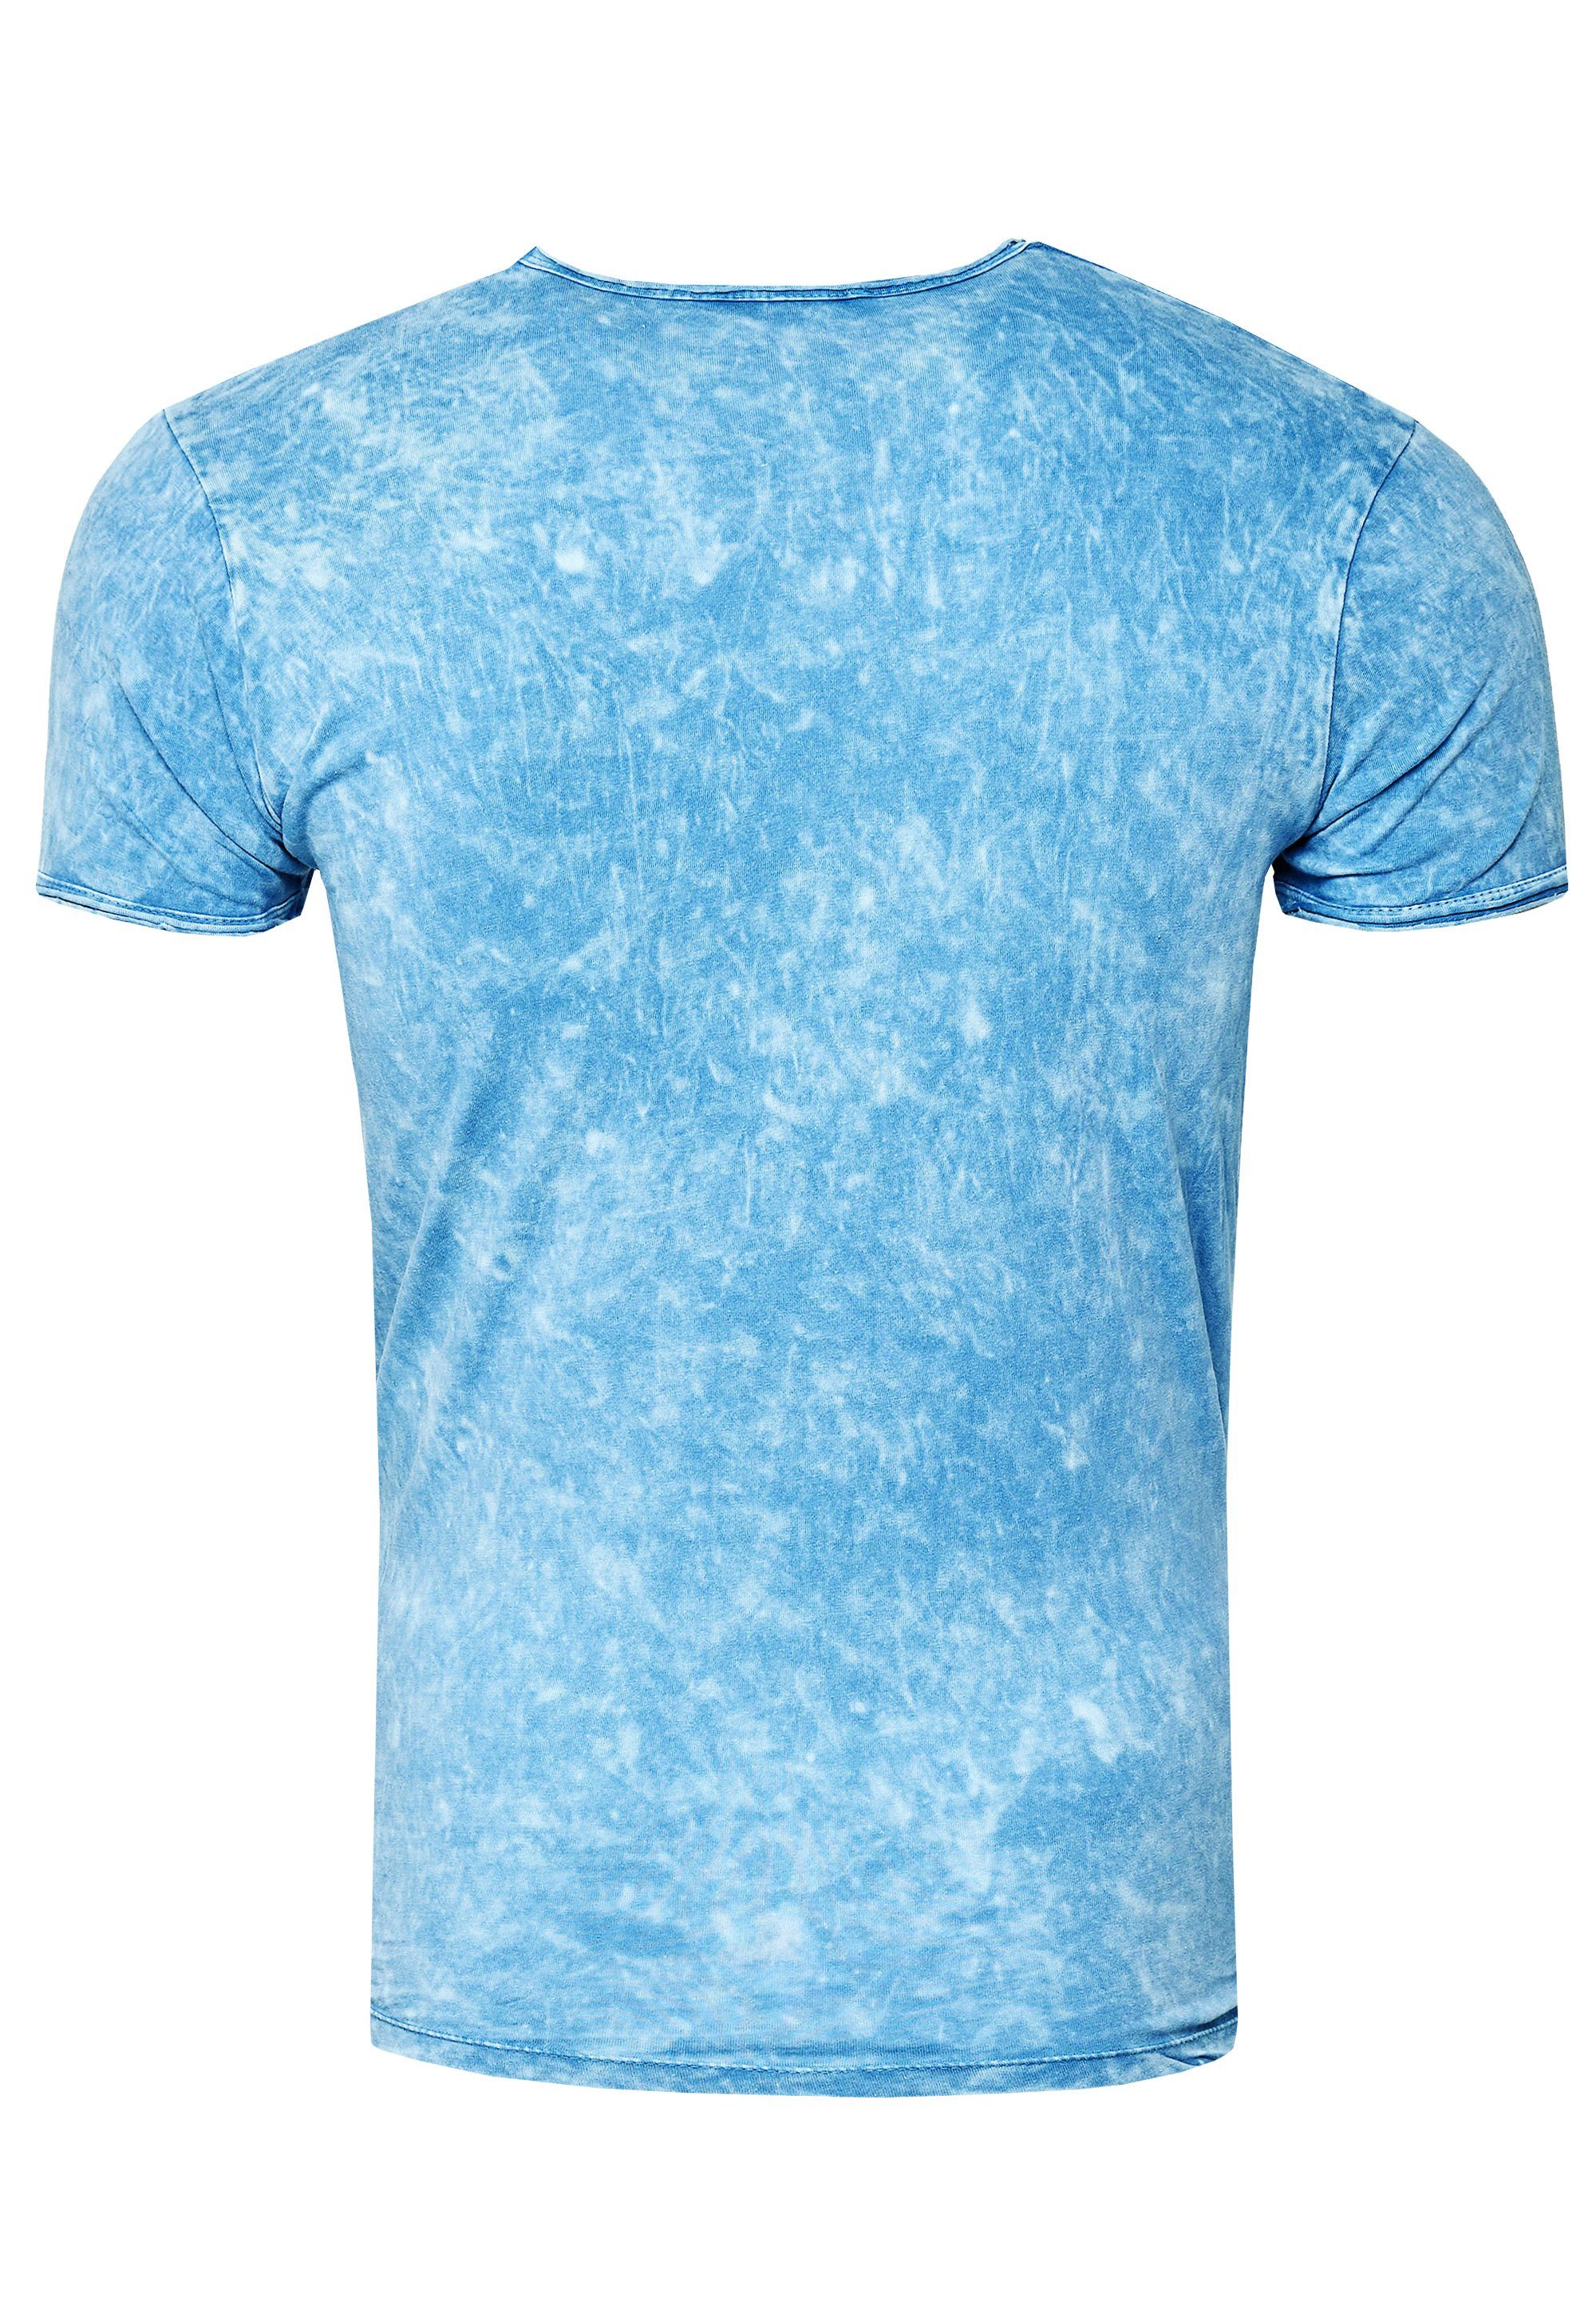 Rusty Print mit hellblau eindrucksvollem Neal T-Shirt